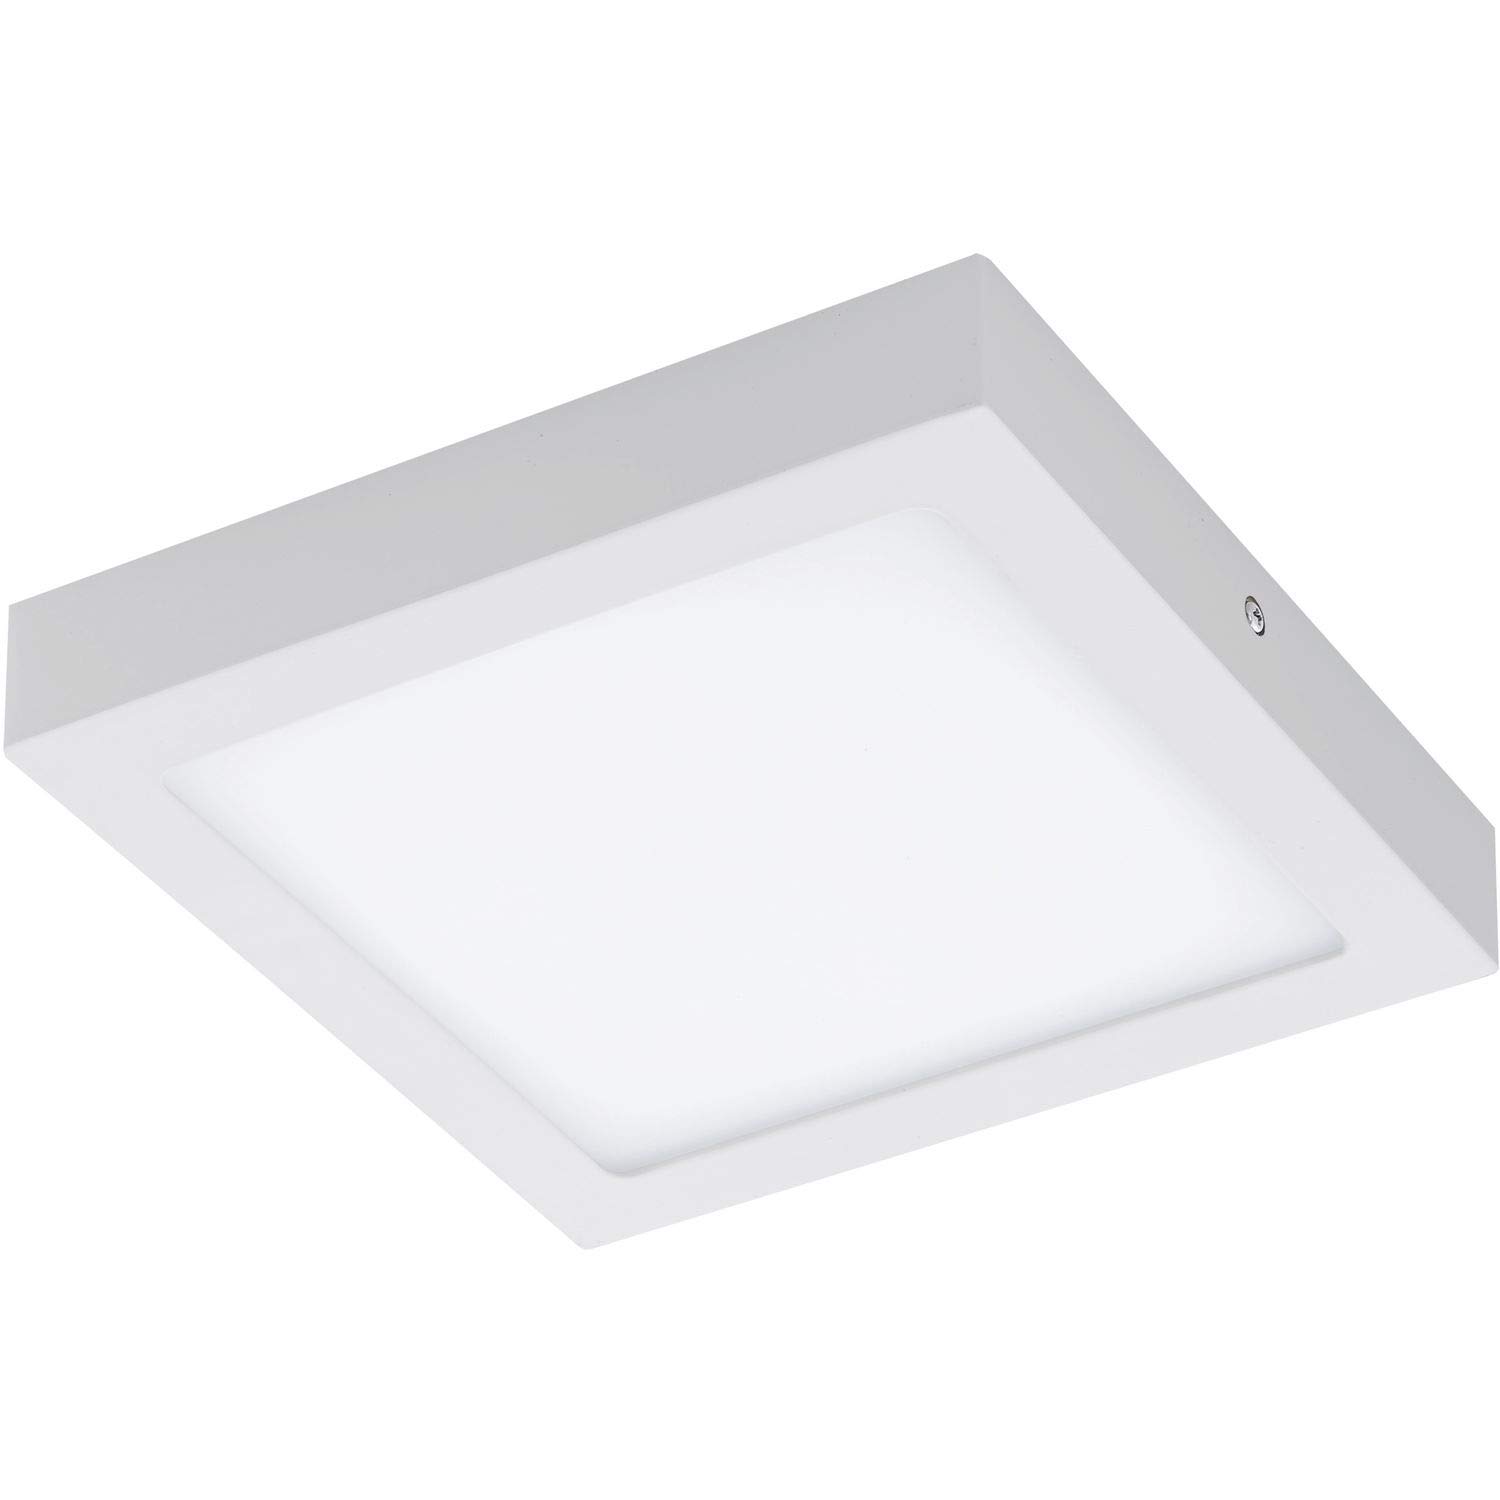 EGLO connect LED Deckenleuchte Fueva-C, Smart Home Deckenlampe, Material: Metallguss, Kunststoff, Farbe: Weiß, L: 22,5x22,5 cm, dimmbar, Weißtöne und Farben einstellbar